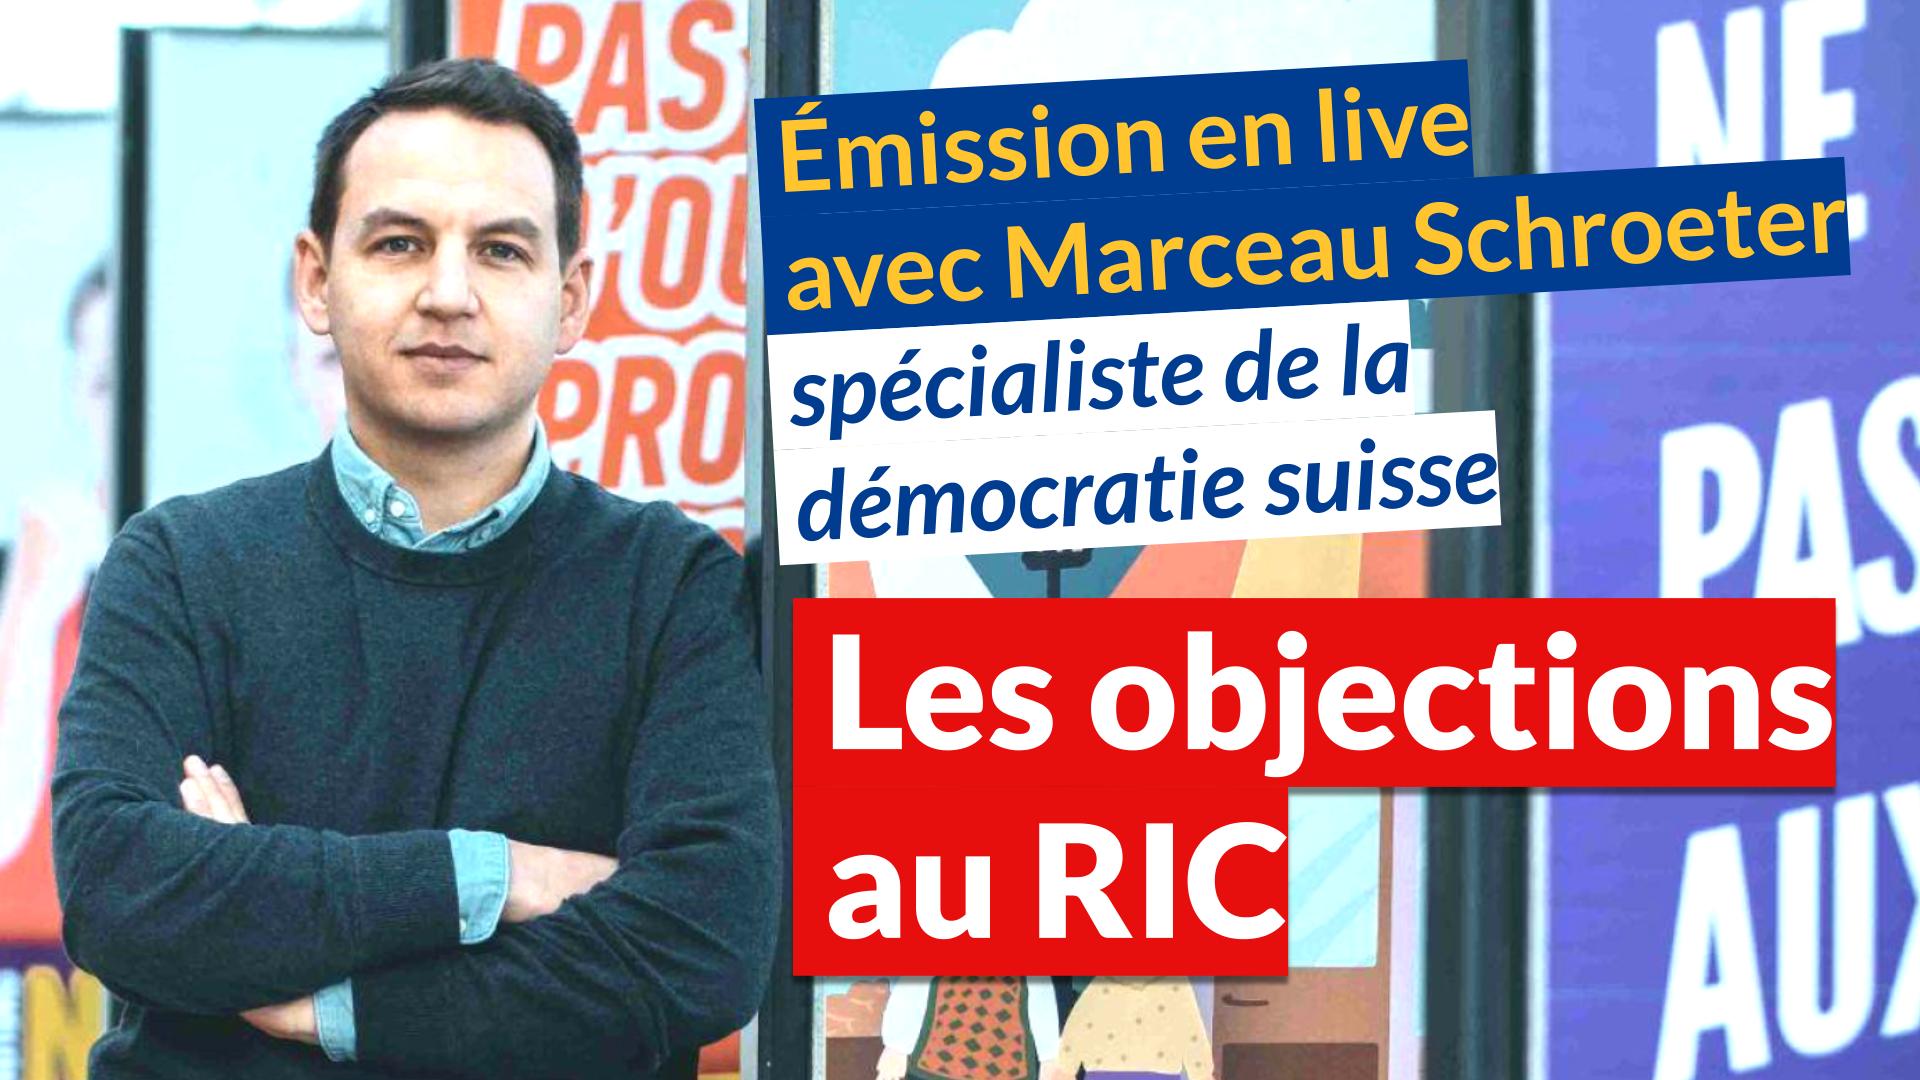 Réponses aux objections sur le RIC par Marceau Schroeter spécialiste de la démocratie suisse